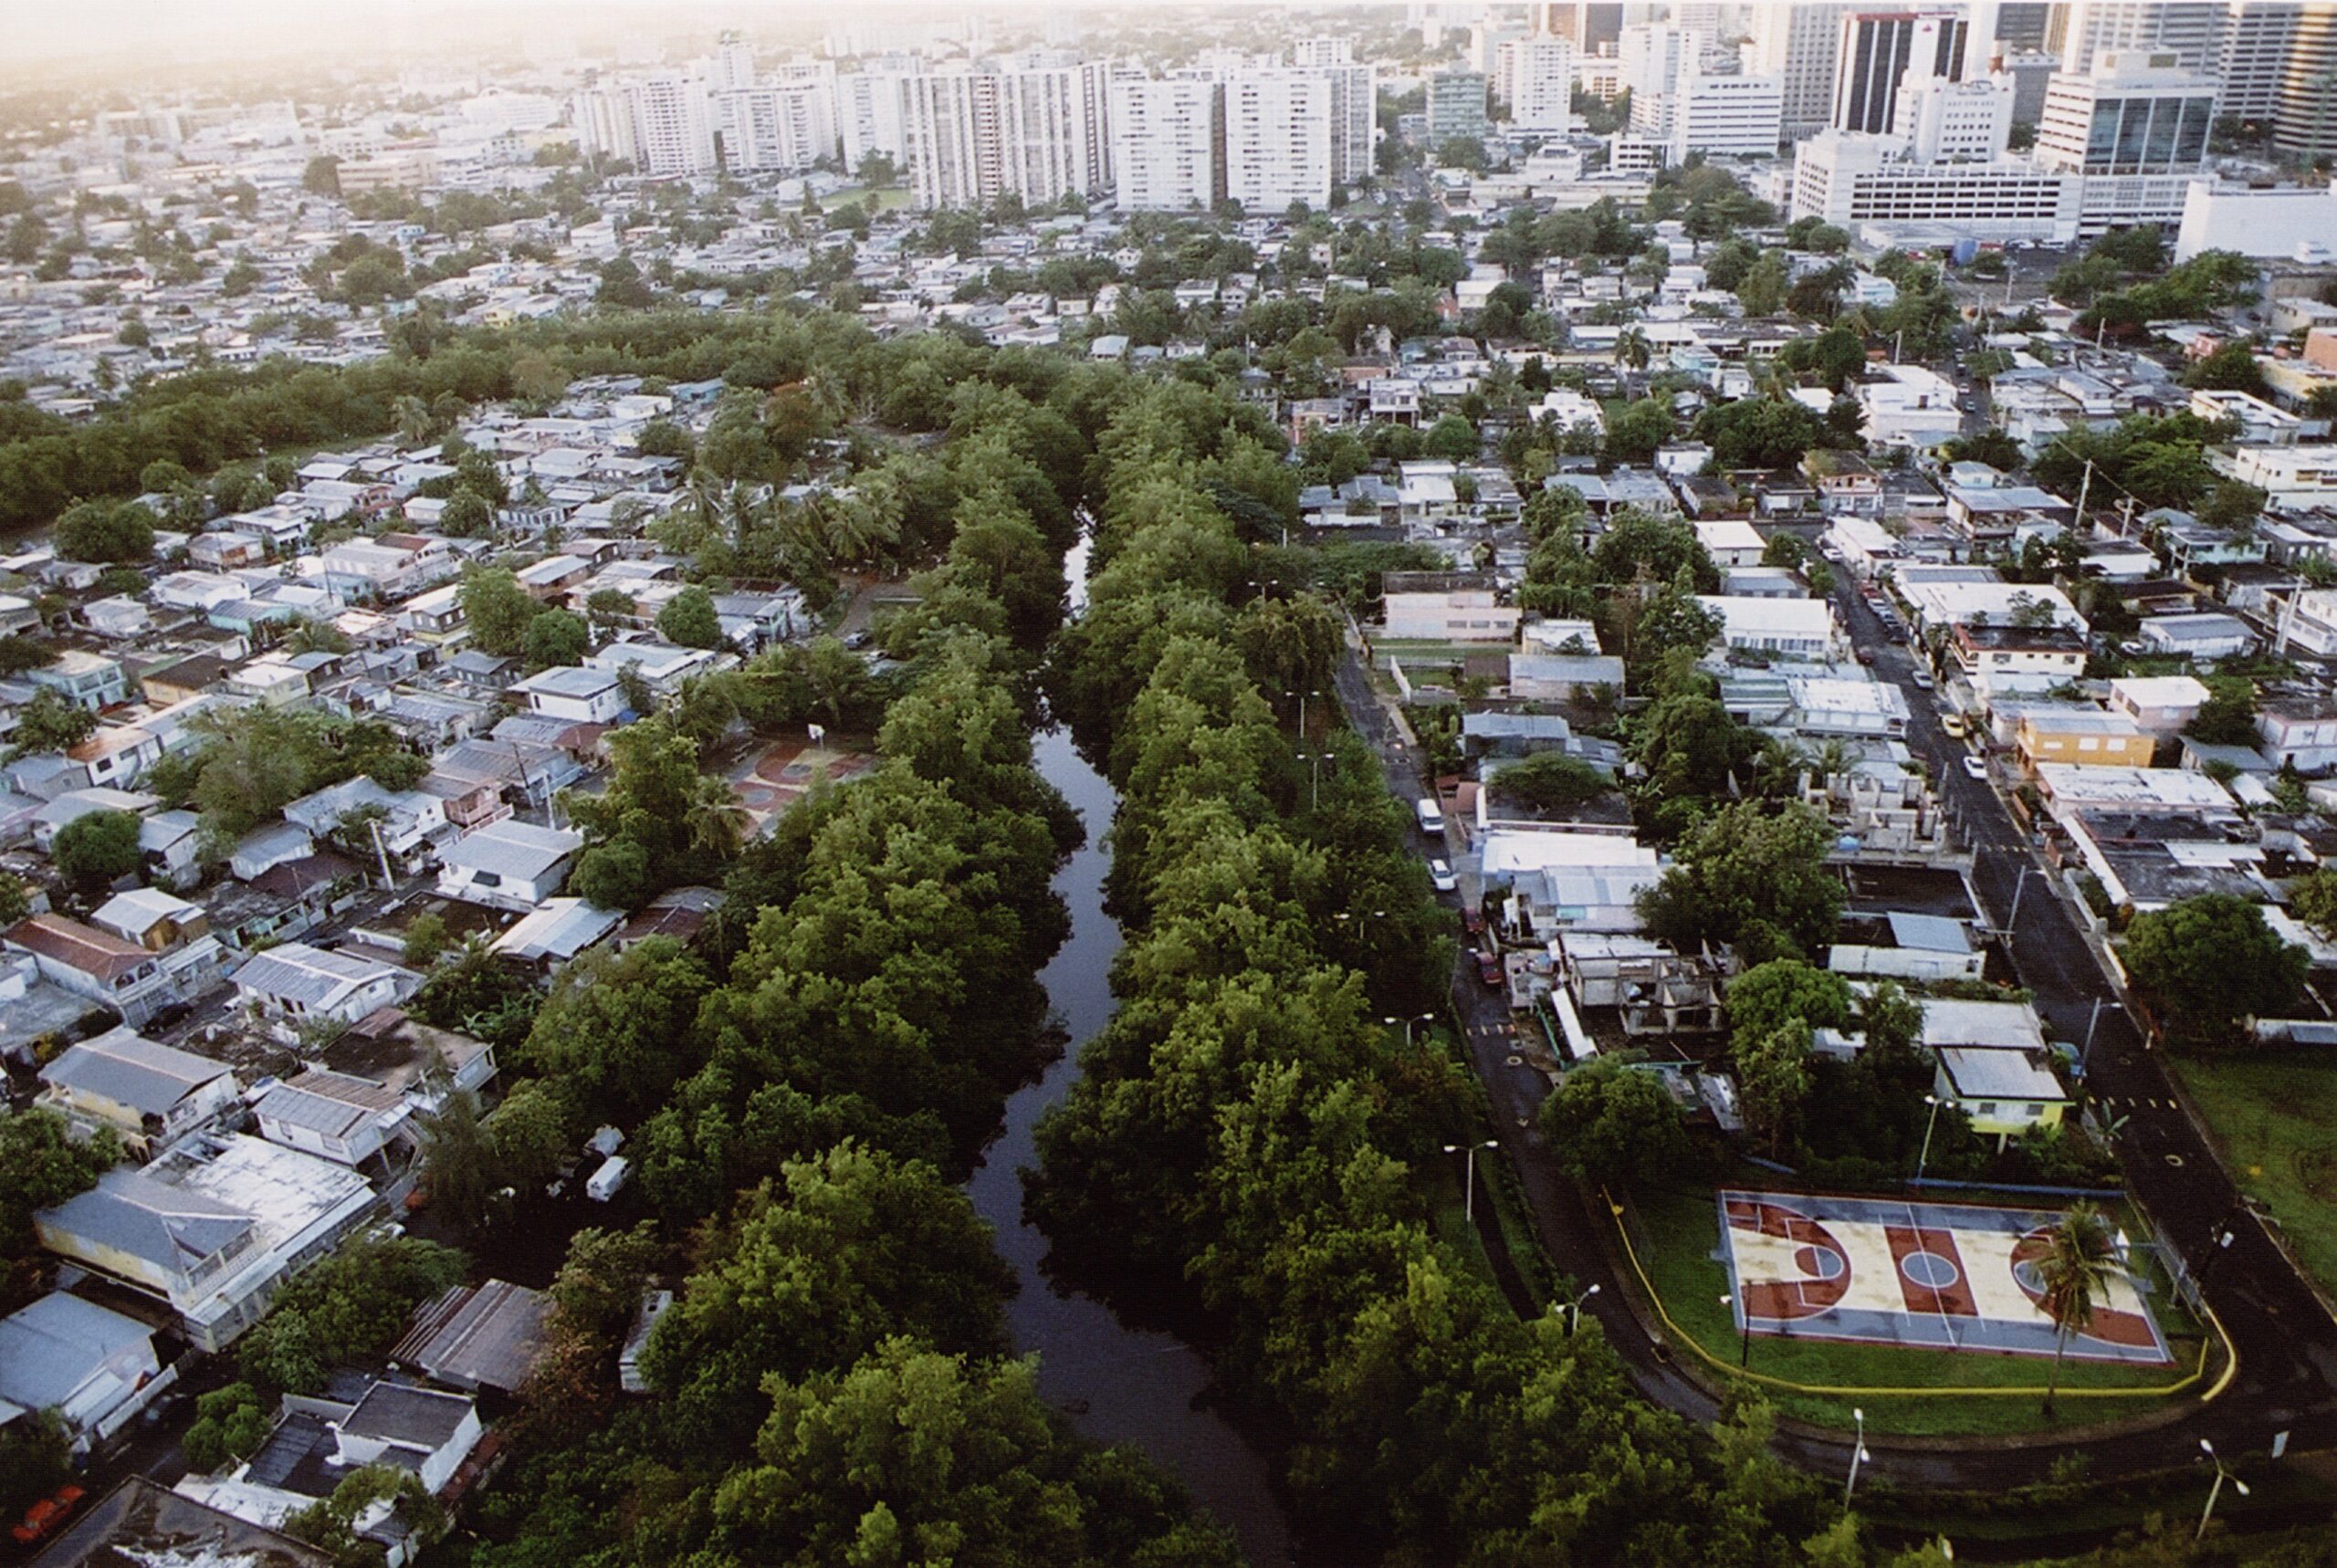 Foto aérea do Fideicomiso de la Tierra Caño Martín Peña, TTC implementado em um conjunto de favelas em Porto Rico, e vencedor do Prêmio Mundial do Habitat em 2015